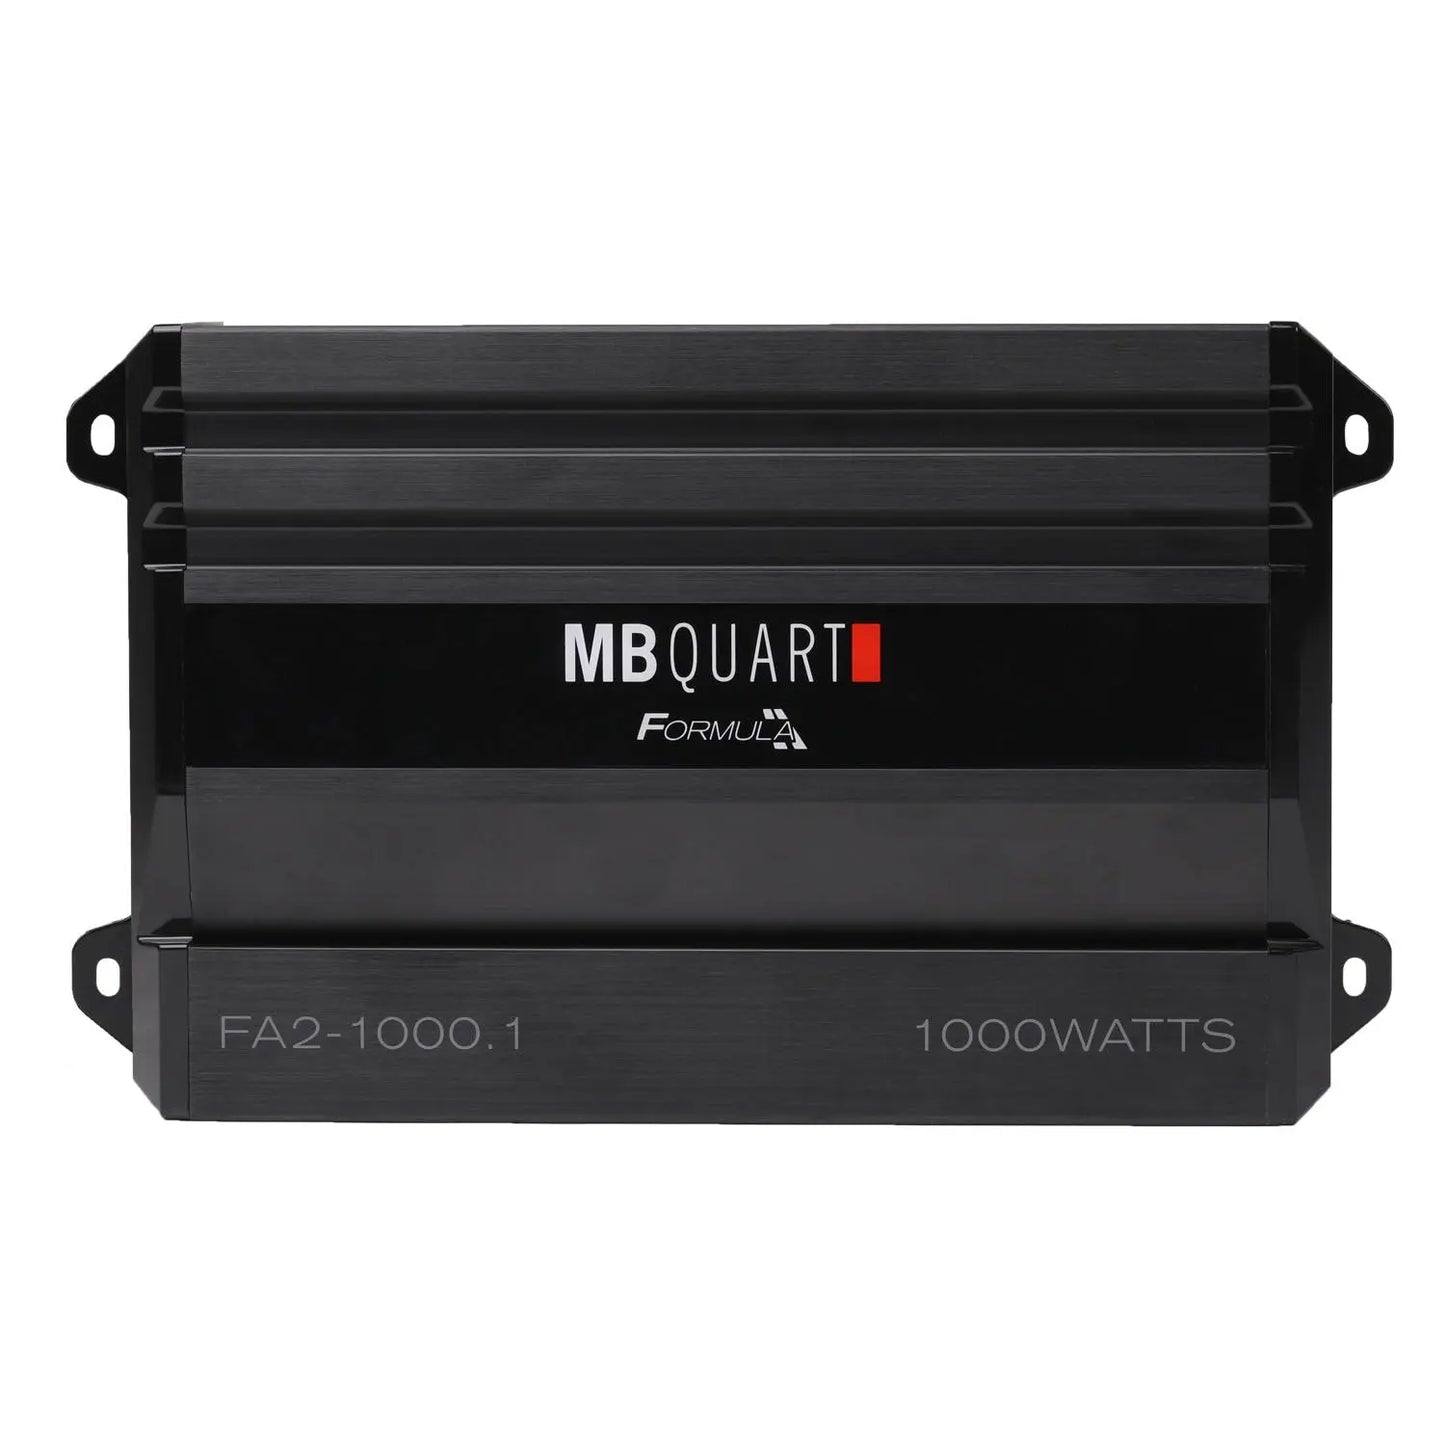 MB Quart FA2-1000.1 Formula Monoblock Amplifier - 1000W MB Quart